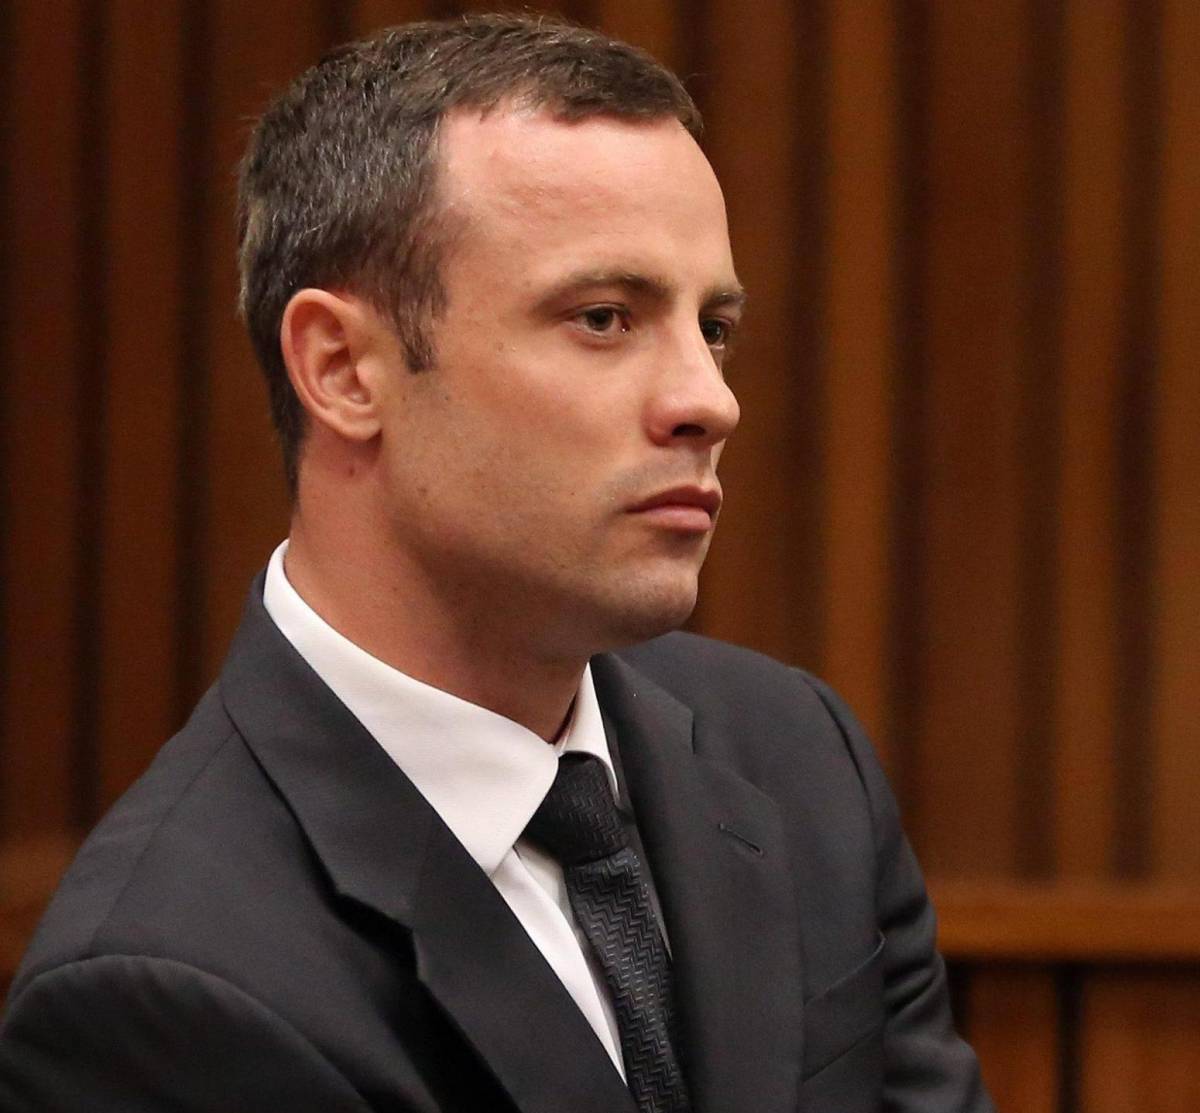 La condanna di Pistorius: dovrà scontare 5 anni per omicidio colposo